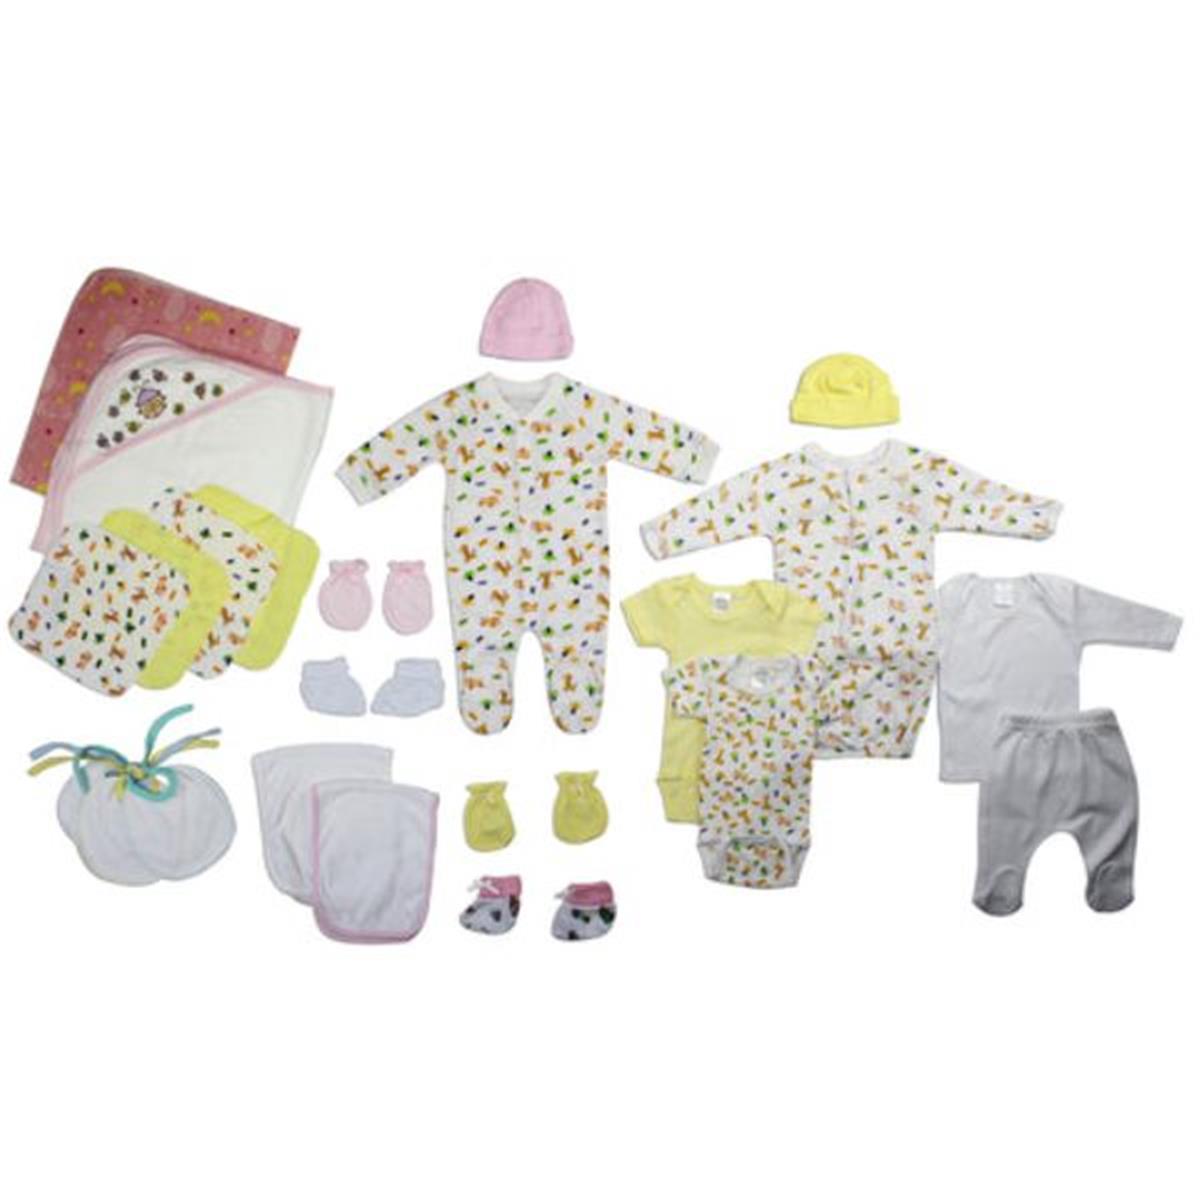 Bambini LS-0030 Newborn Baby Girl Layette Baby Shower Gift Set&#44; White & Pink - Newborn